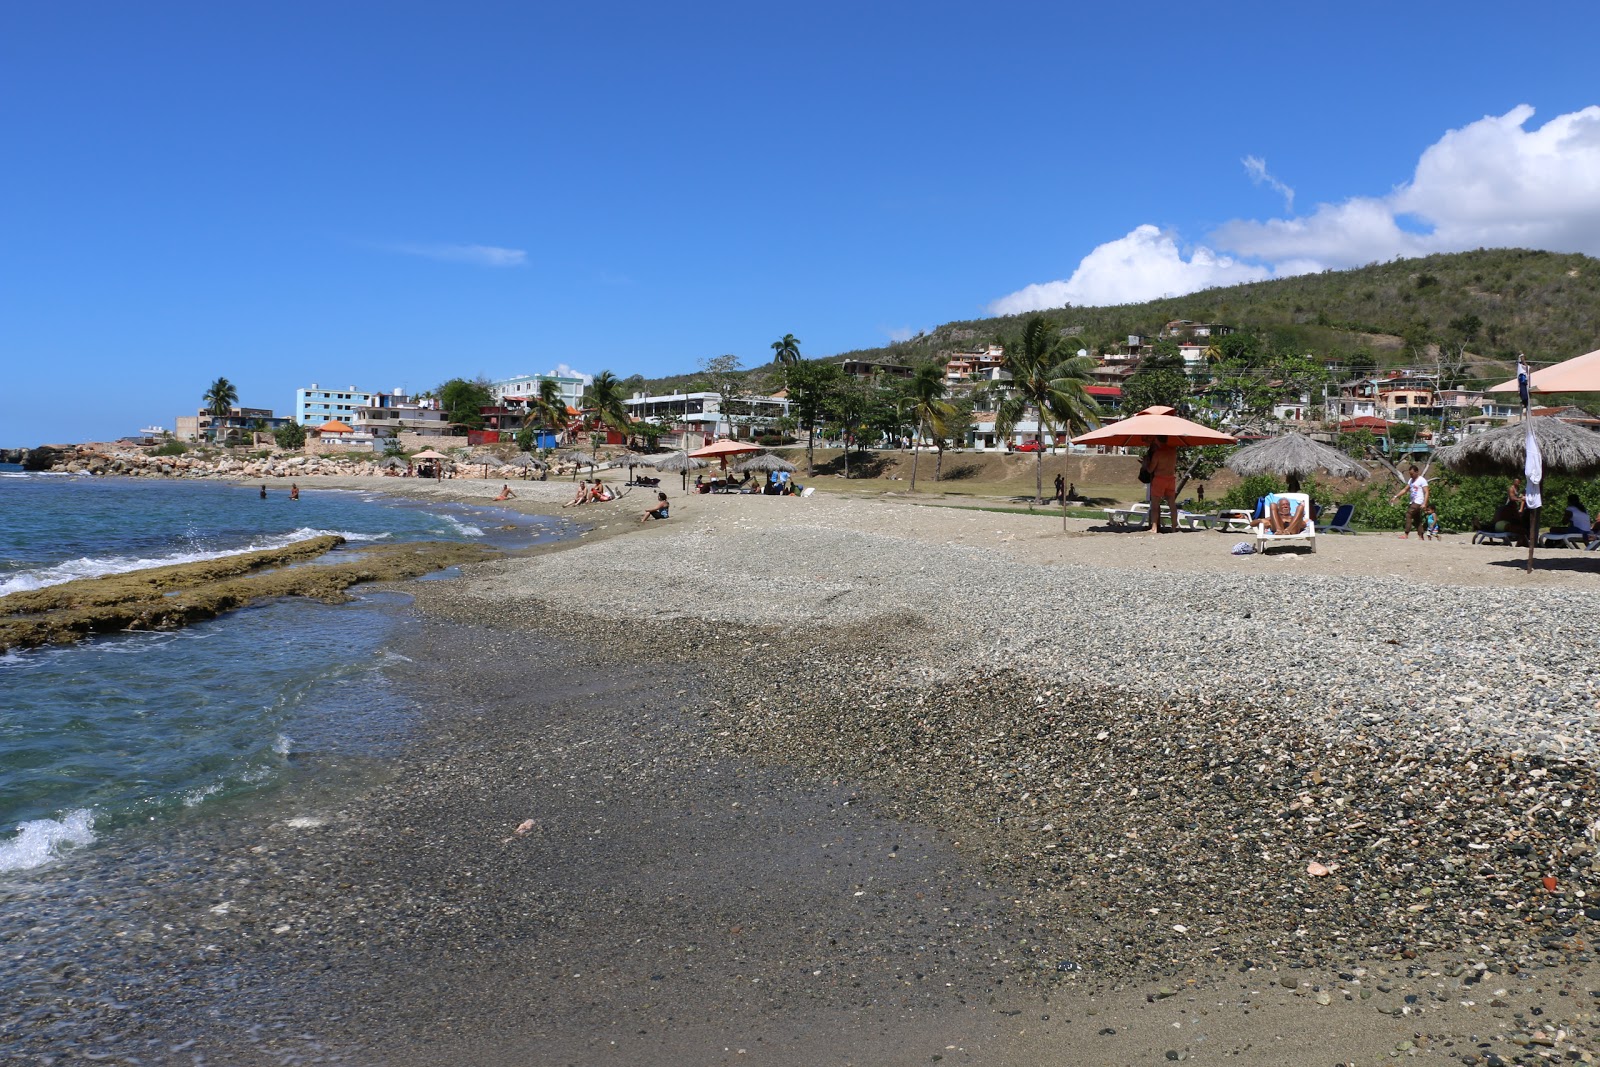 Playa de Siboney的照片 带有碧绿色水表面